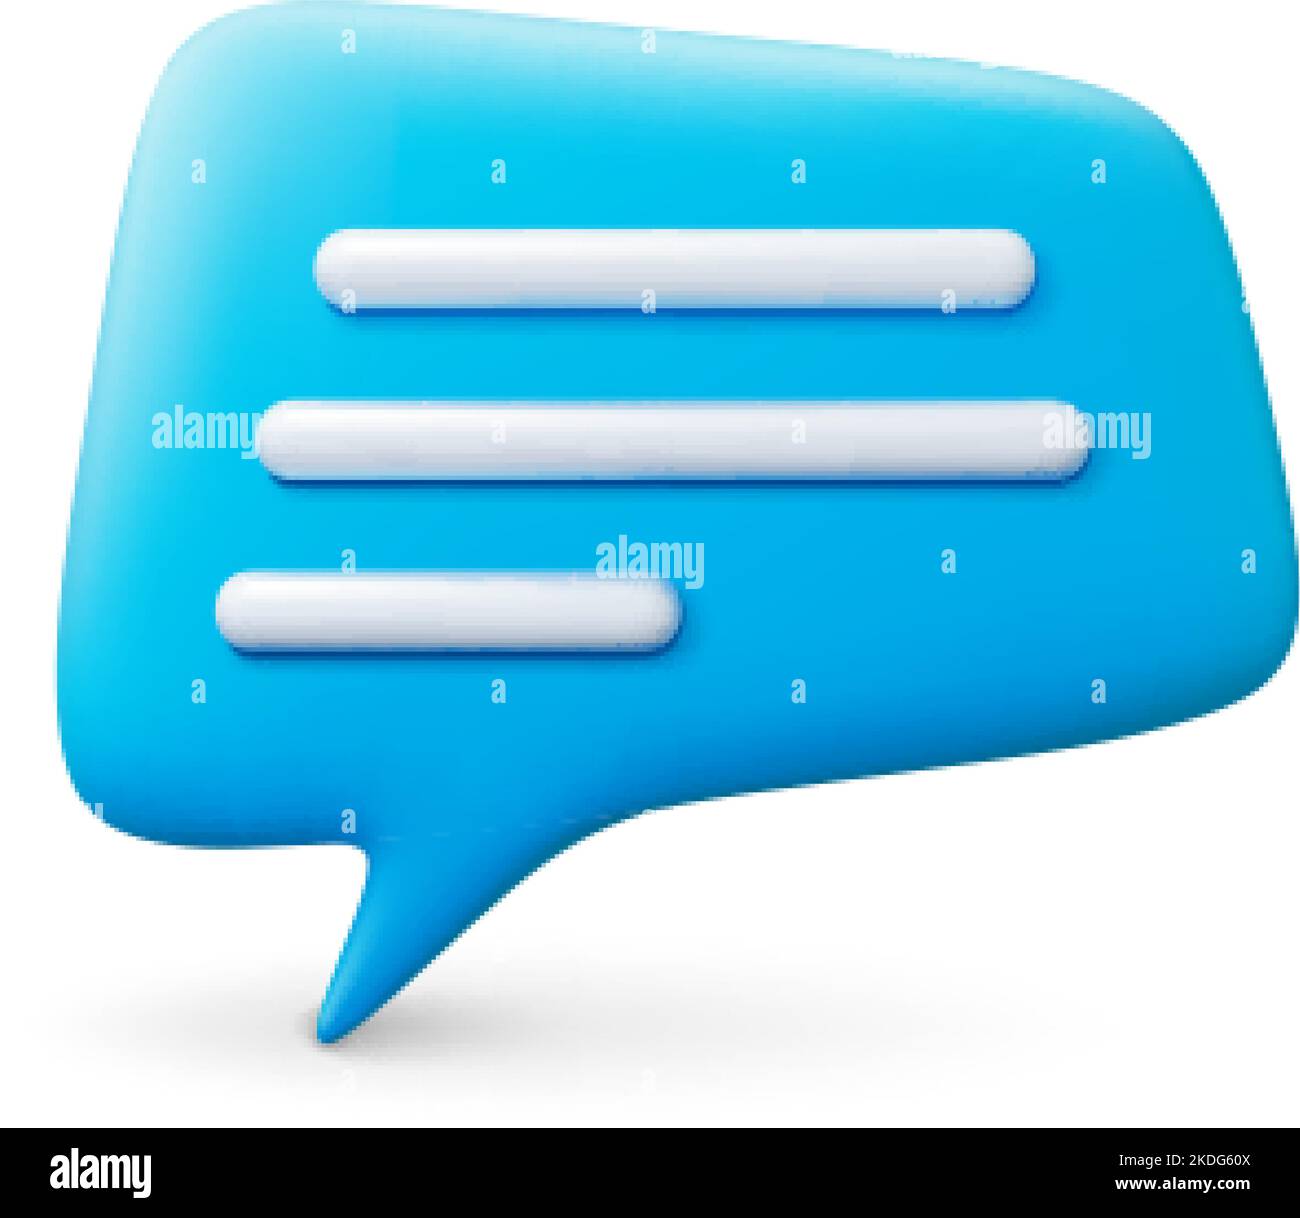 Effetto messaggio chat 3D. Elementi isolati della bolla vocale, icona di conversazione realistica per reti Web, social media, app o design di siti. Pensiero testuale Illustrazione Vettoriale